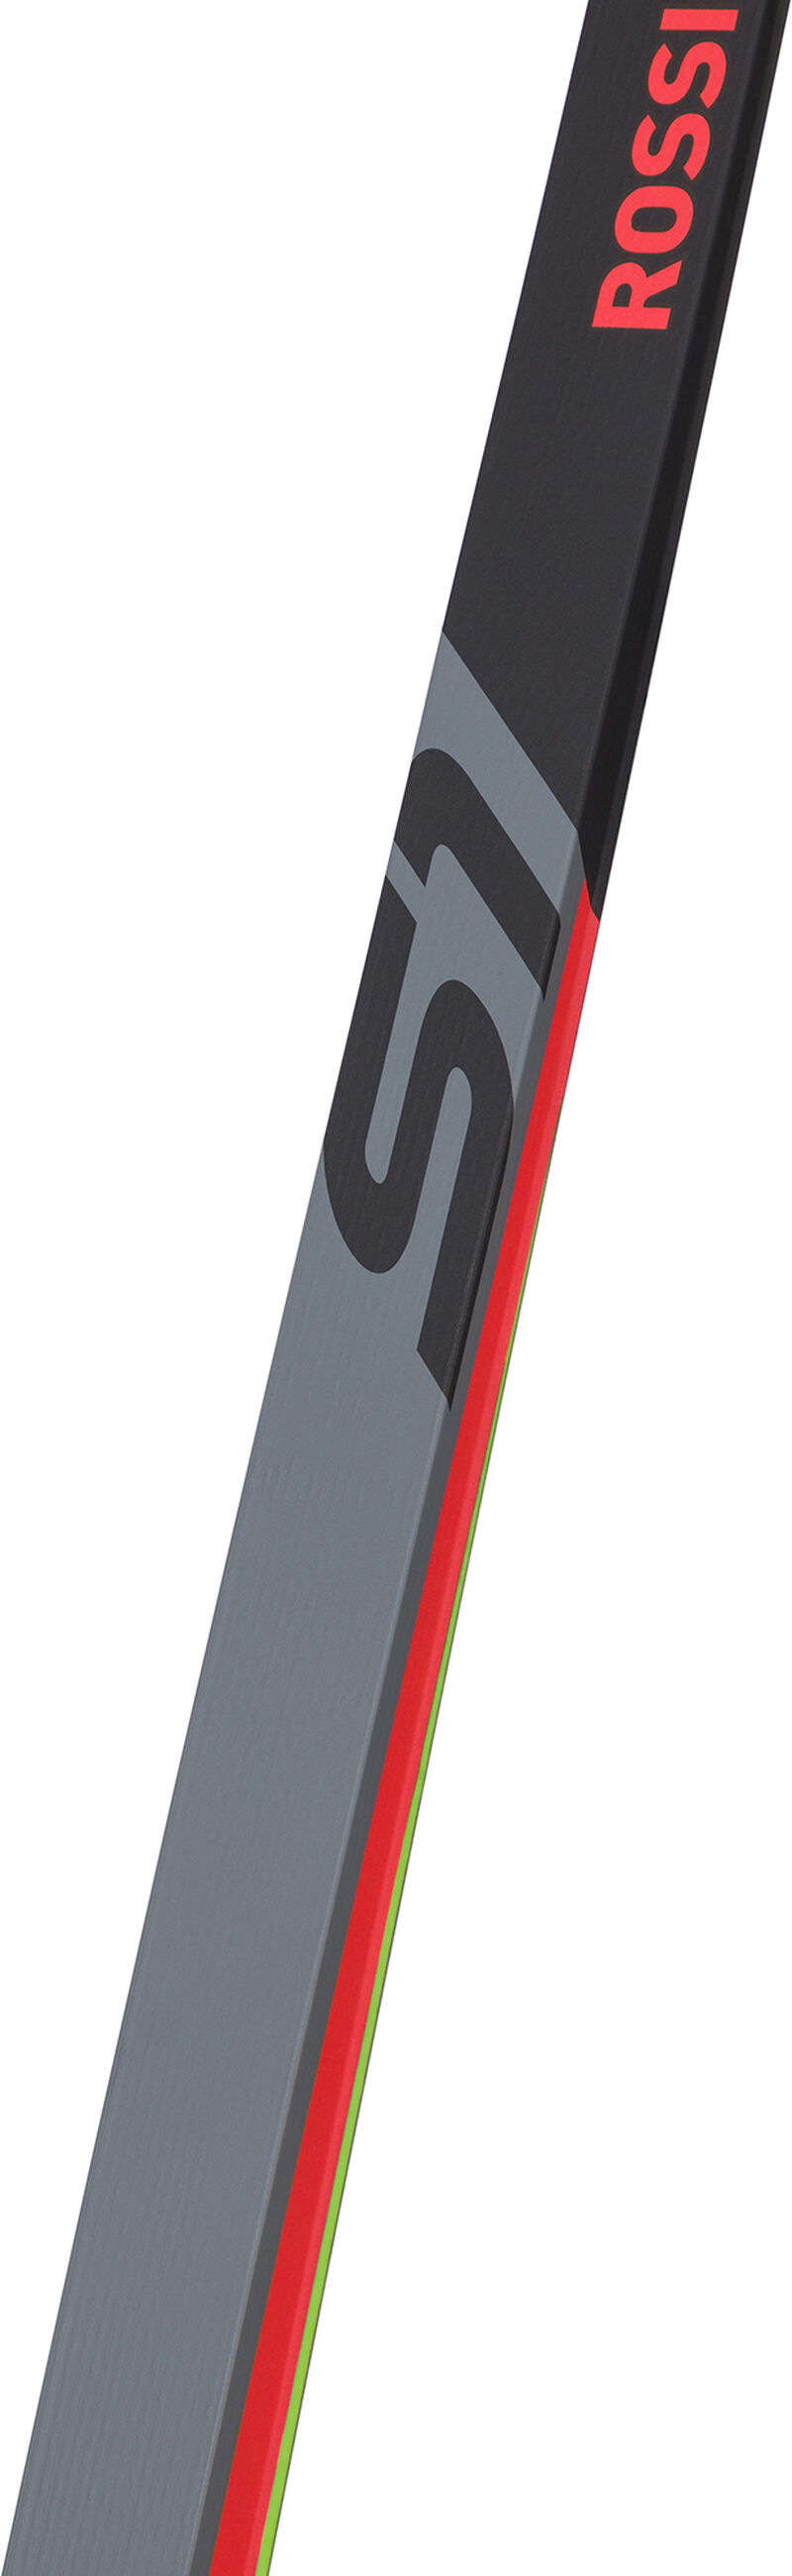 Rossignol Unisex Nordic Racing Skis X-IUM SKATING PREMIUM + S1 STIFF multicolor